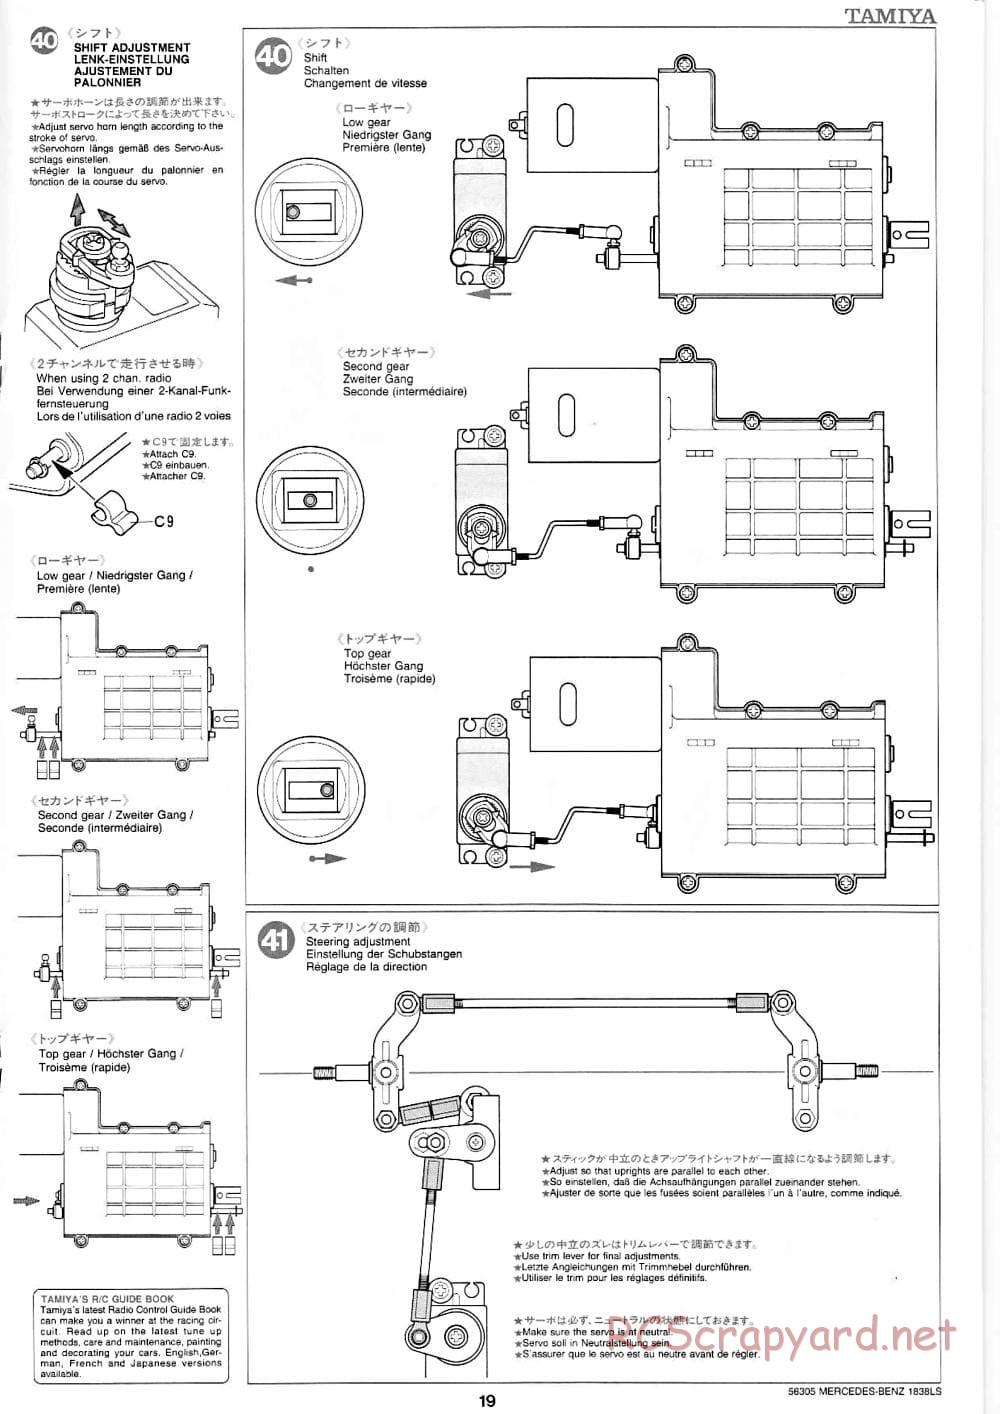 Tamiya - Mercedes-Benz 1838LS - Manual - Page 19